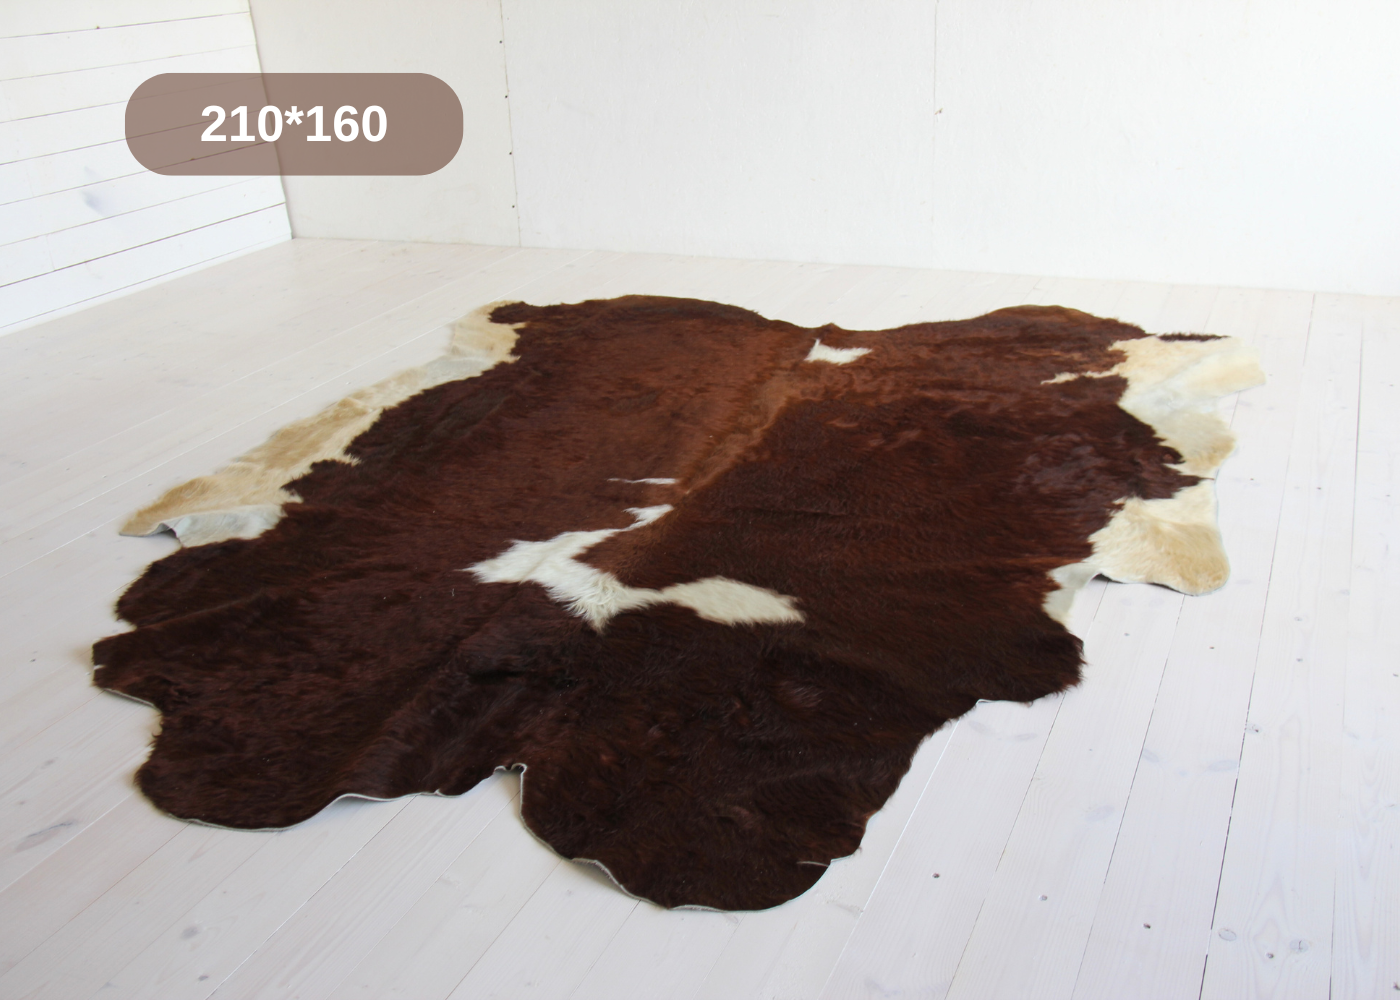 Ковер шкура коровы натуральная природный окрас Shkura-Dekor коричневая 2*1.75м